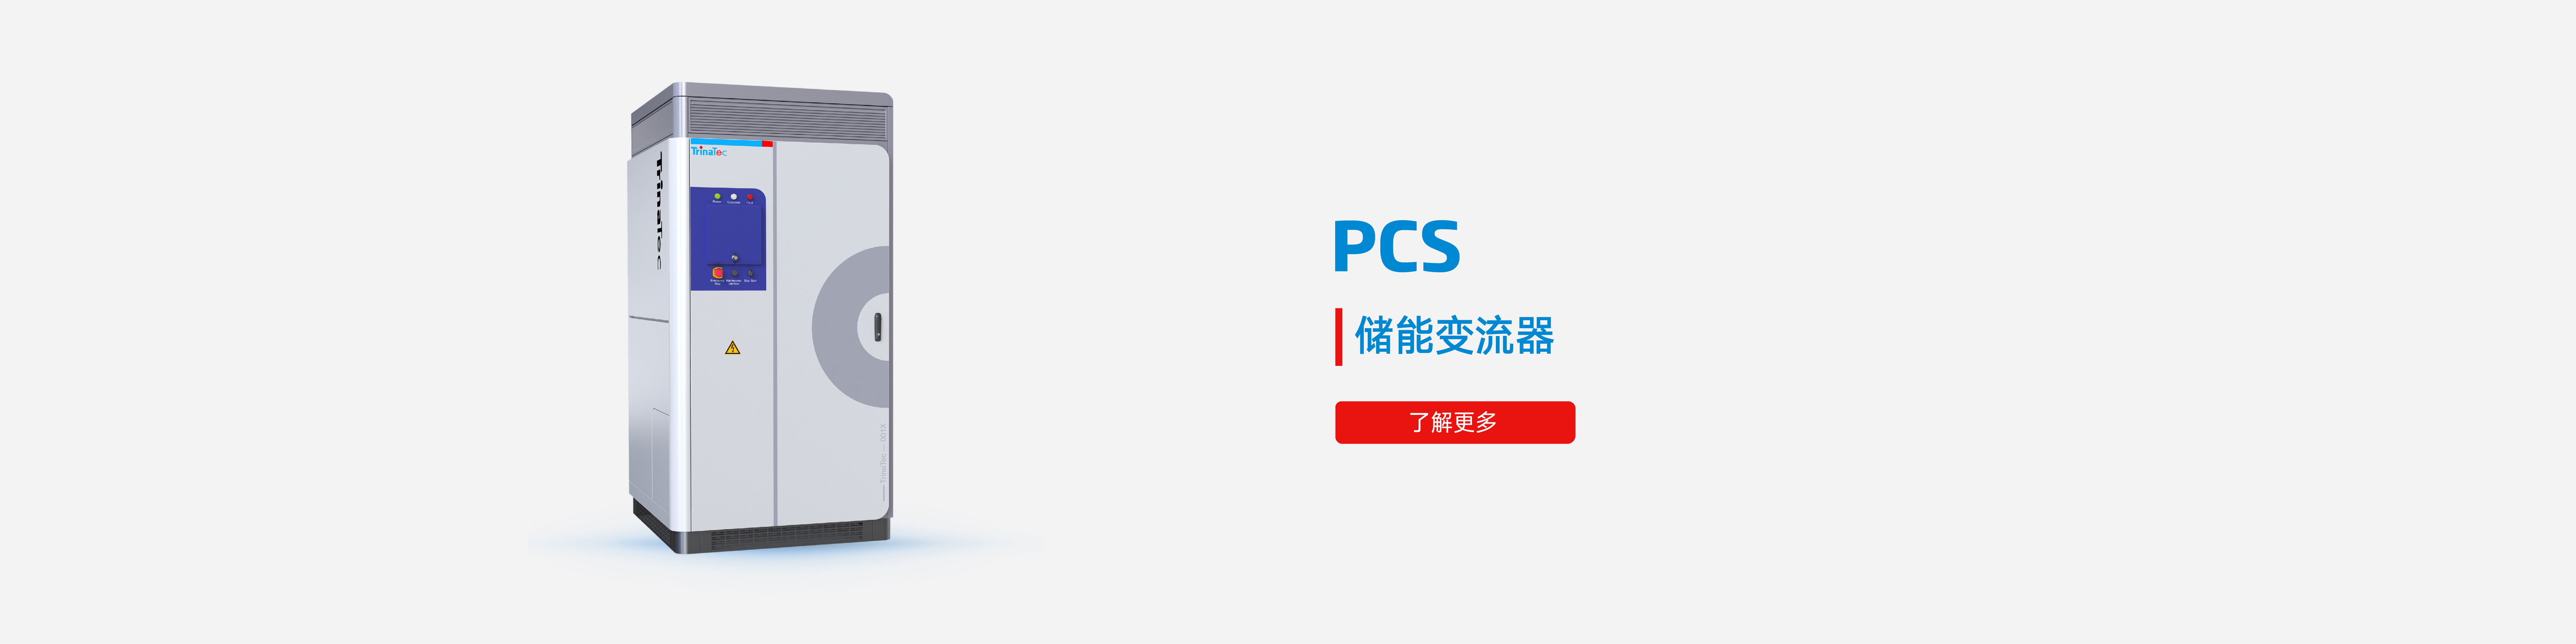 9999js金沙老品牌(中国游)官方网站